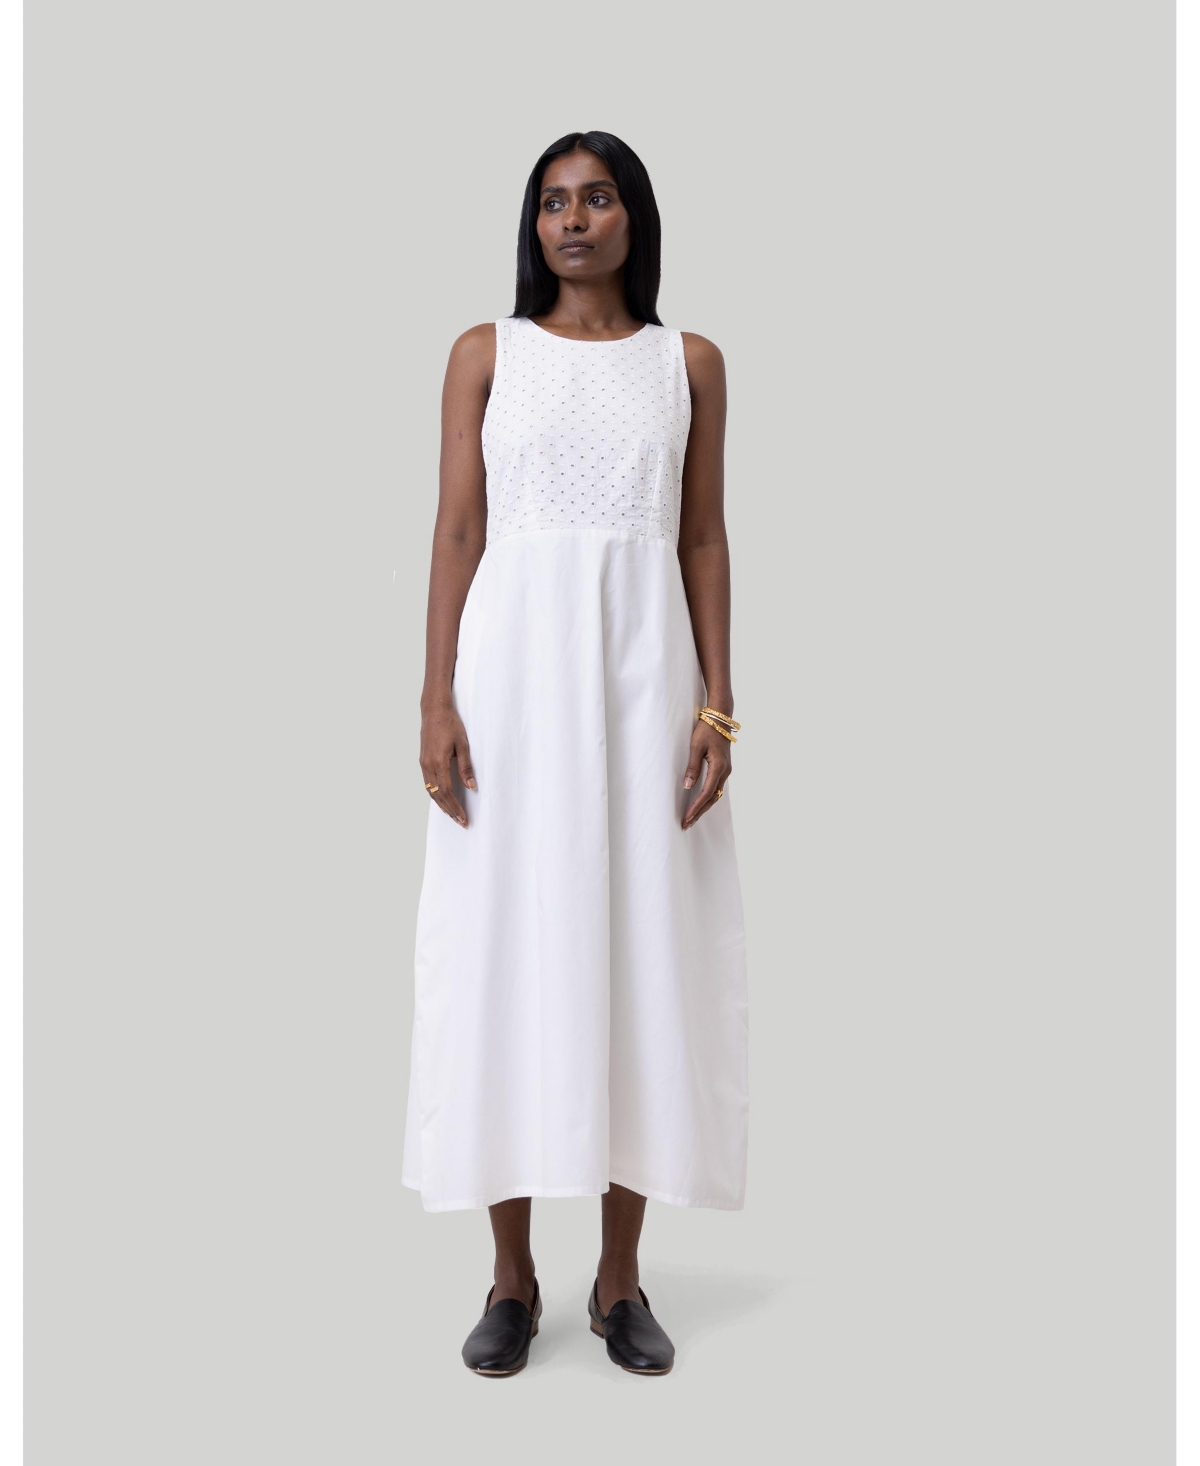 Women's Cross-back Midi Dress - White